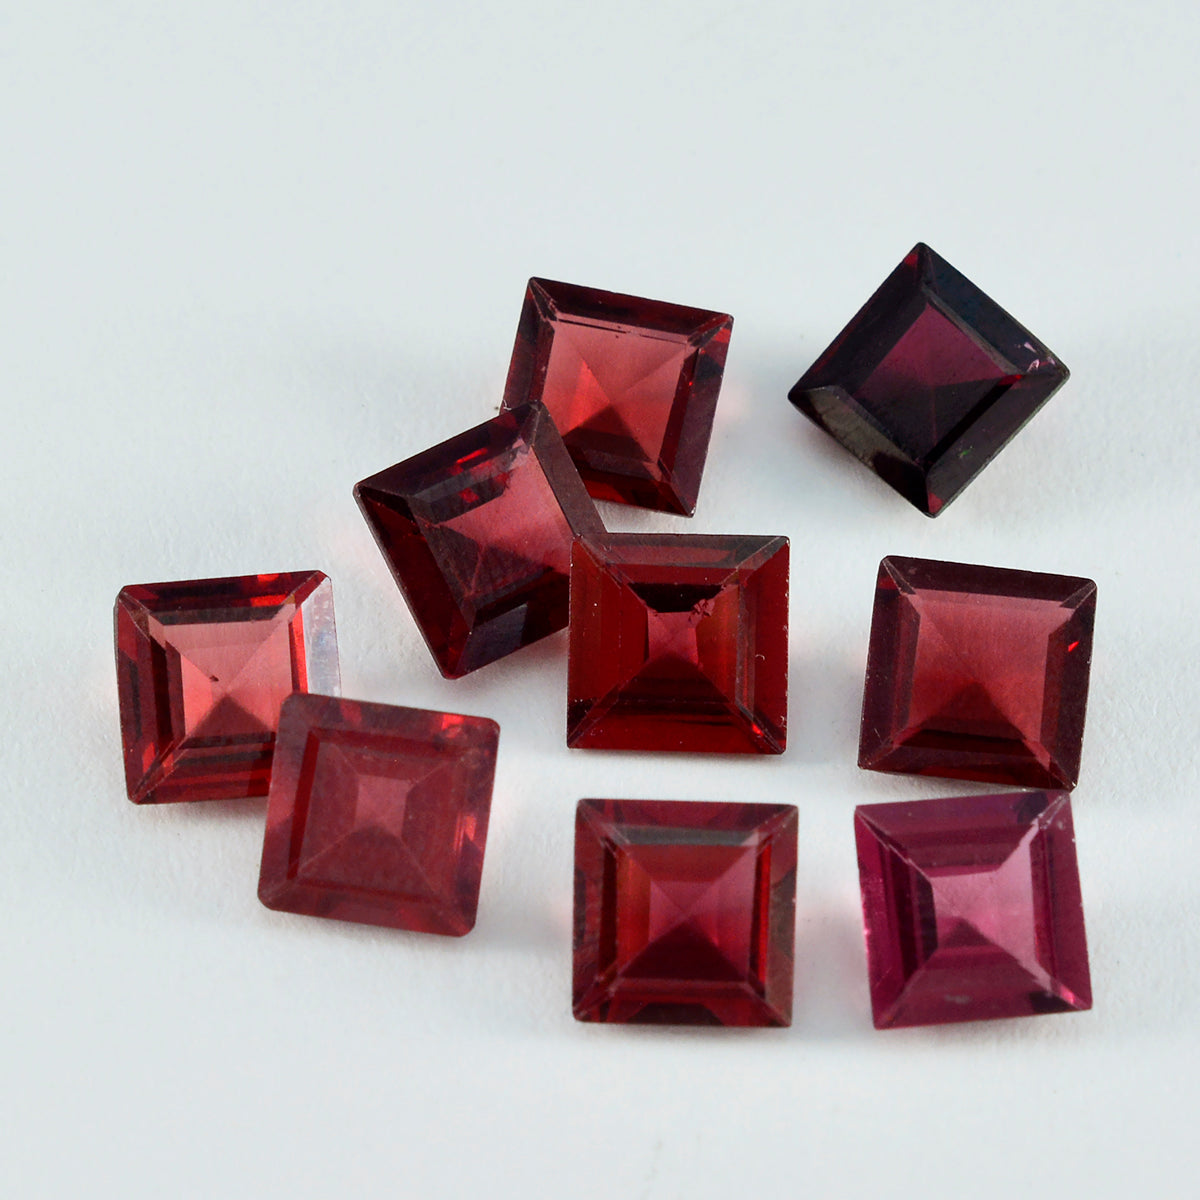 Riyogems 1 Stück echter roter Granat, facettiert, 8 x 8 mm, quadratische Form, hübscher Qualitäts-Edelstein